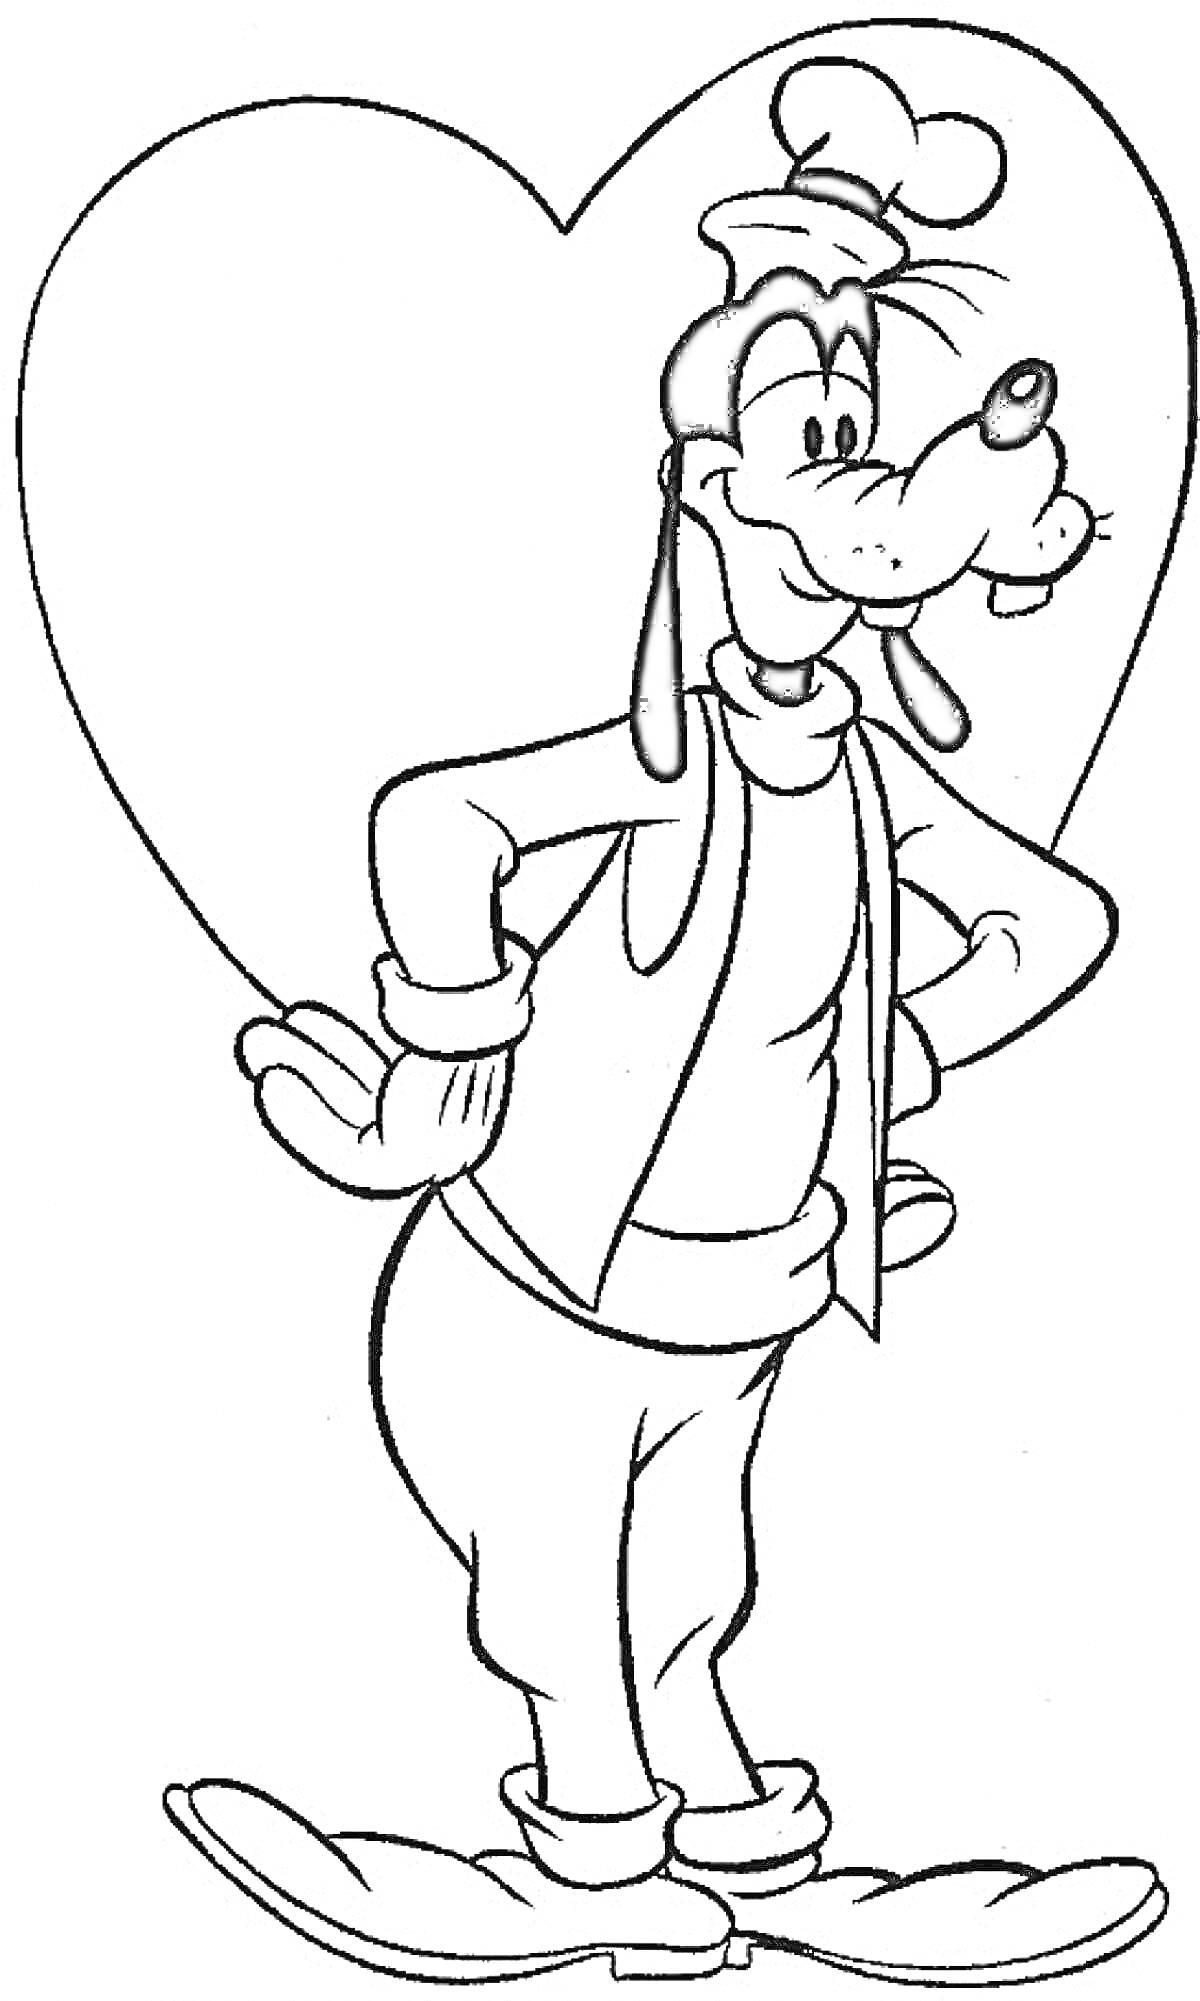 Раскраска Гуфи перед сердцем, в шляпе, шарфе и варежках